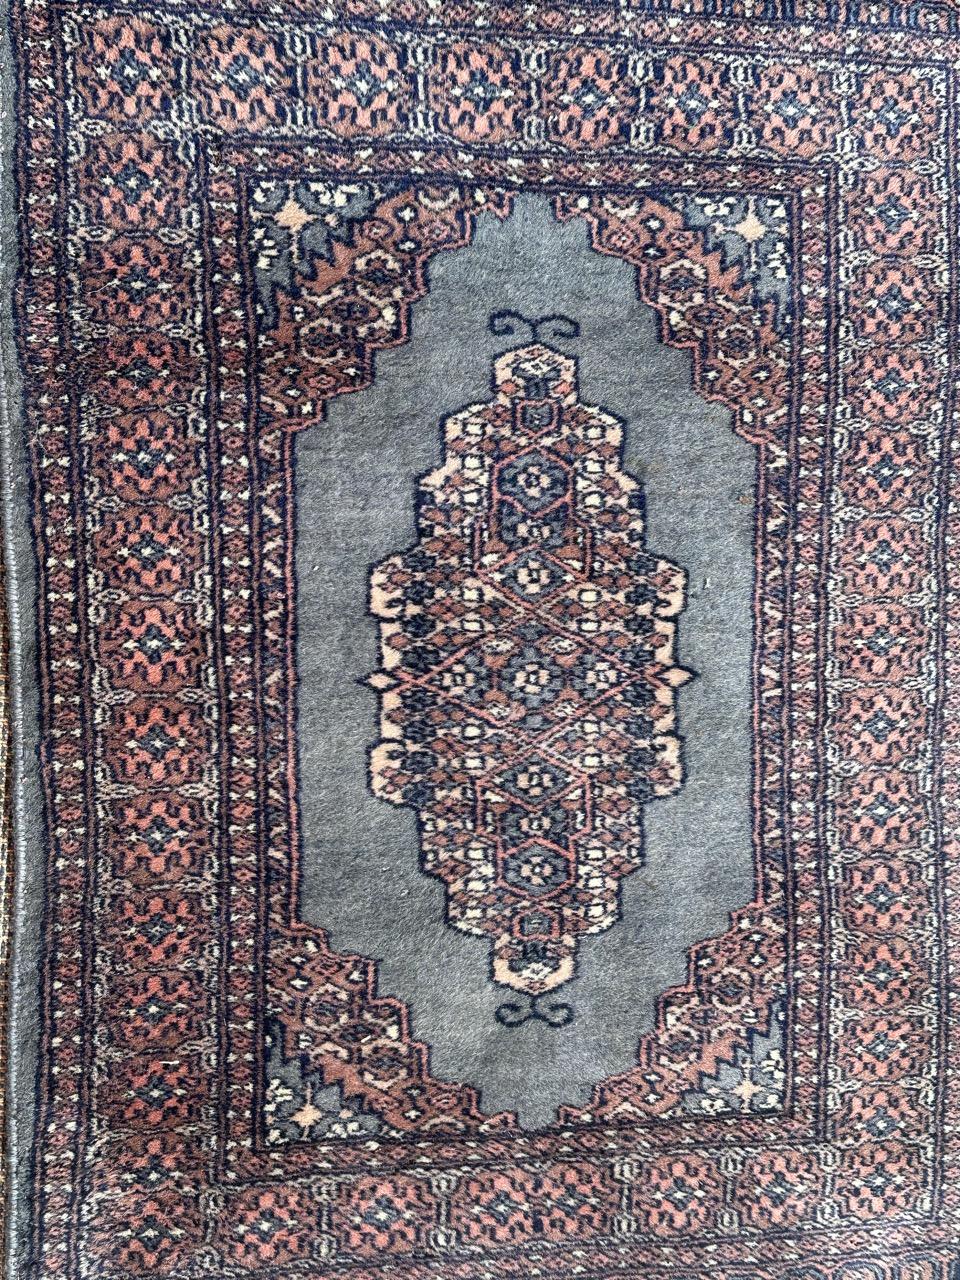 Joli petit tapis pakistanais vintage avec un design géométrique turkmène et de belles couleurs avec un champ bleu, entièrement et finement noué à la main avec de la laine sur une base en coton. 

✨✨✨
